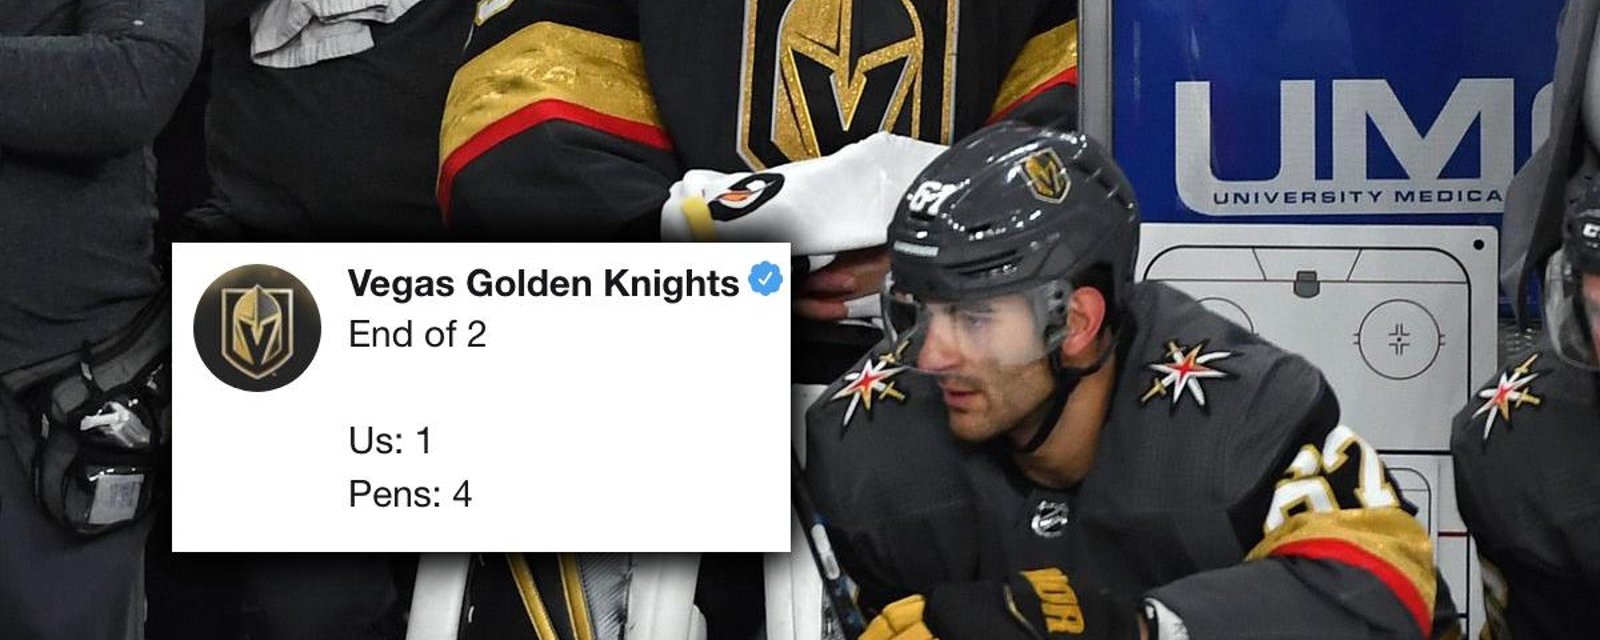 Le compte Twitter des Golden Knights se tape une crise en temps réel